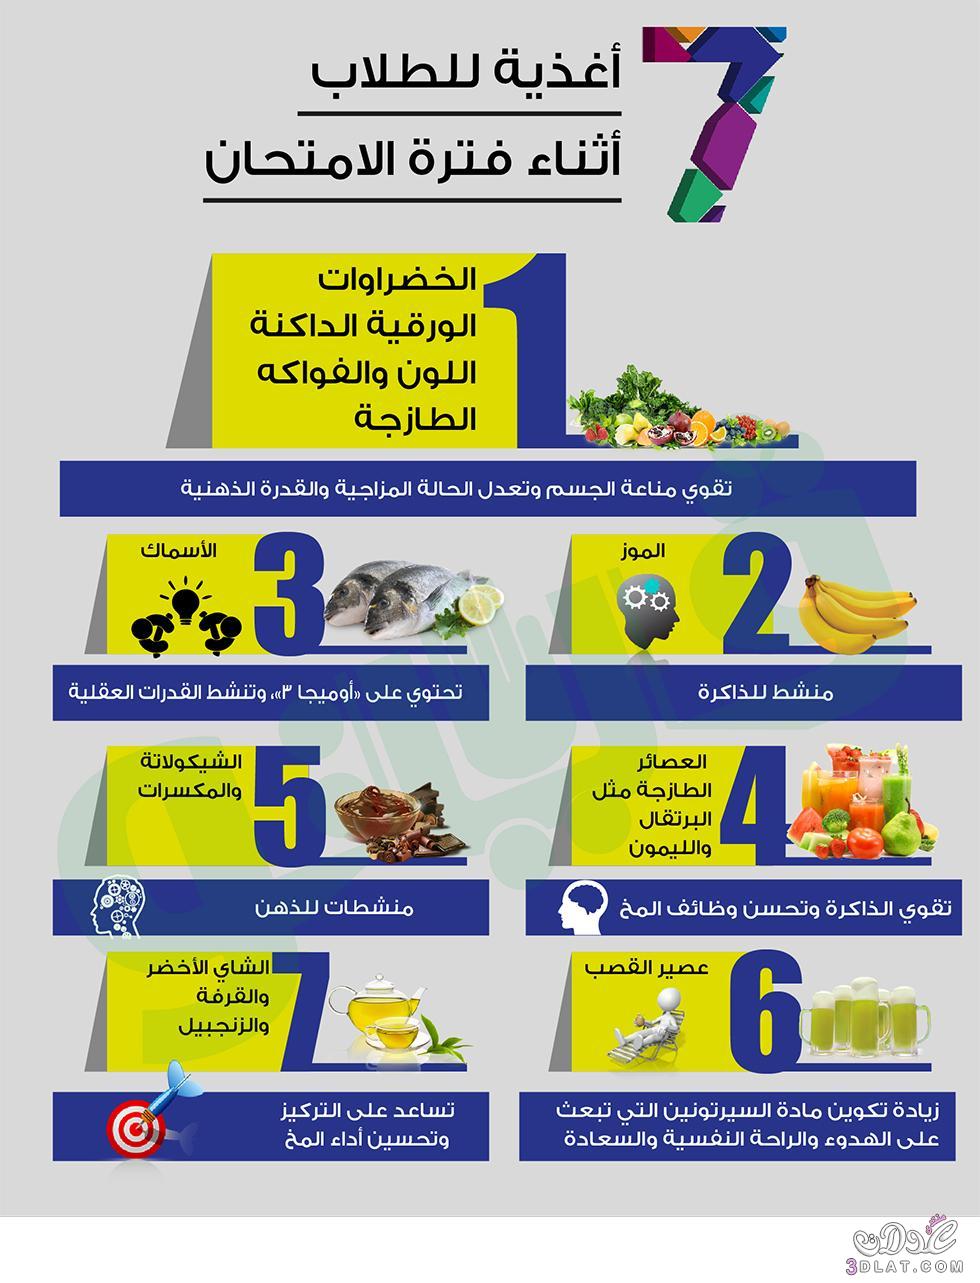 7 أغذية للطلاب أثناء فترة الامتحان